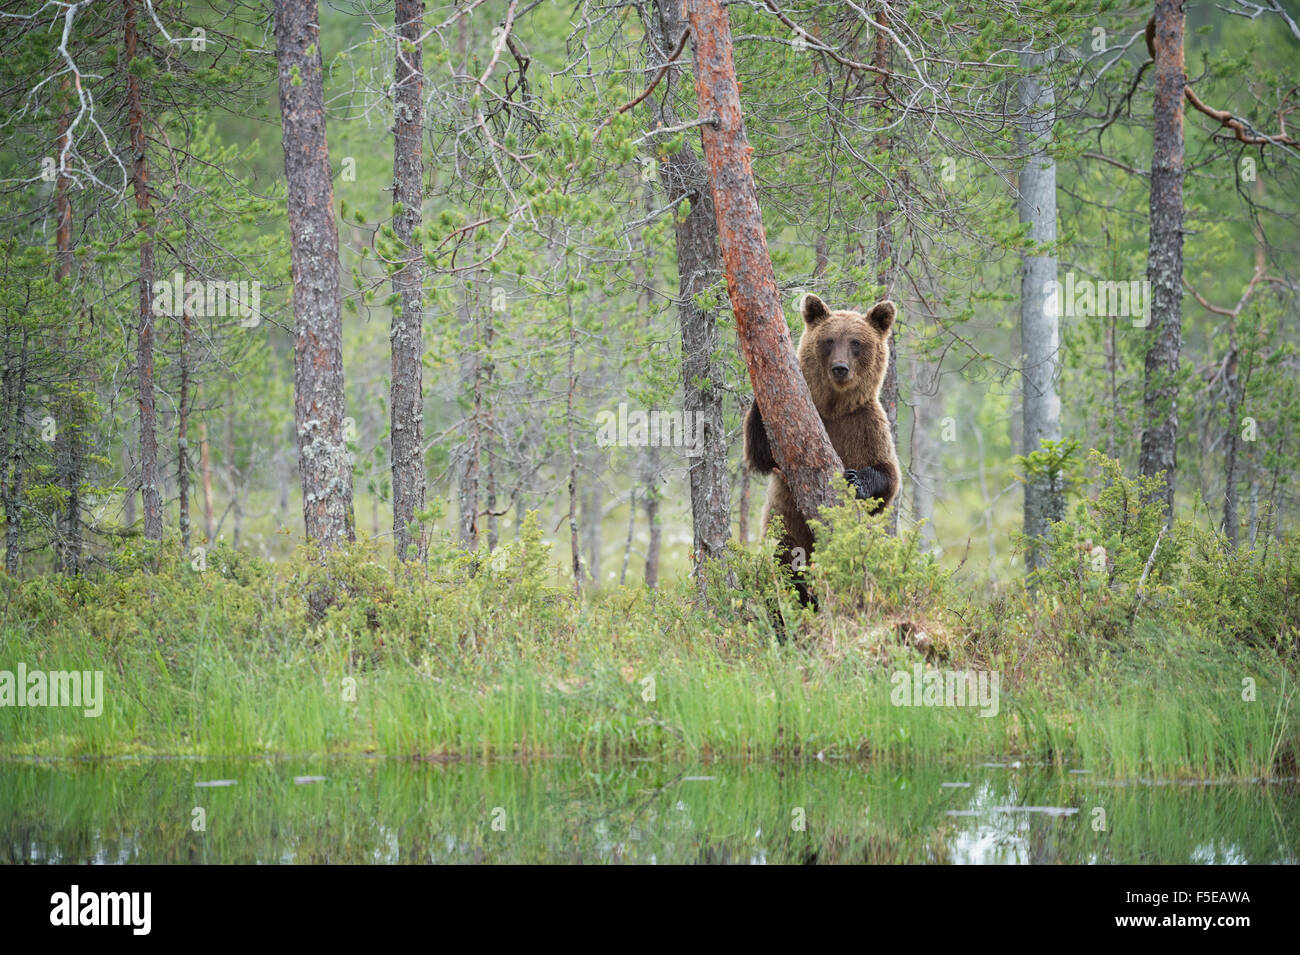 Brown bear (Ursus arctos), Kuhmo, Finland, Scandinavia, Europe Stock Photo